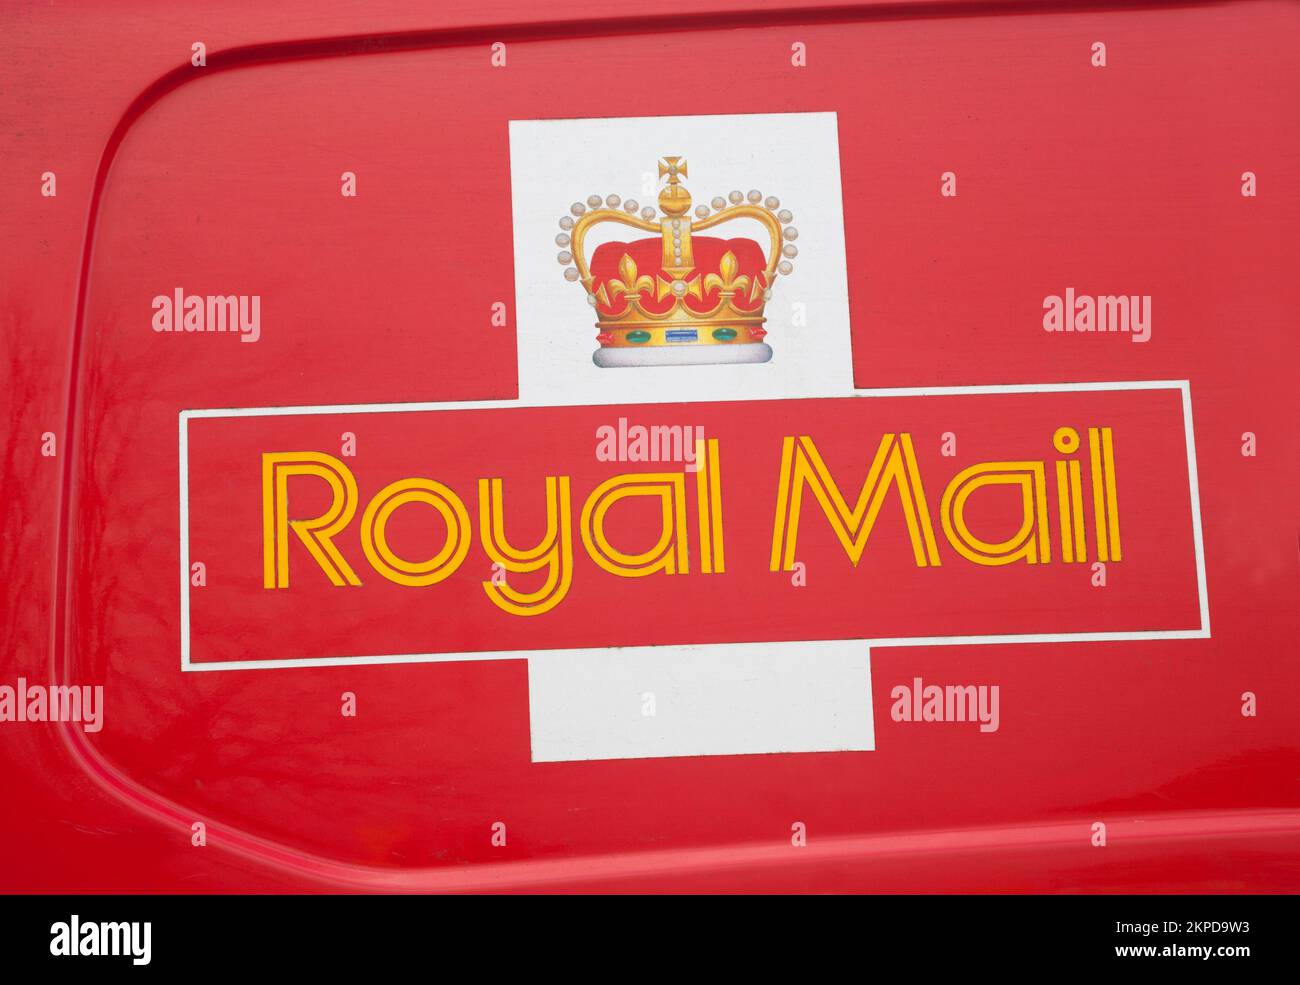 Logo de Royal Mail sur la camionnette de livraison Banque D'Images